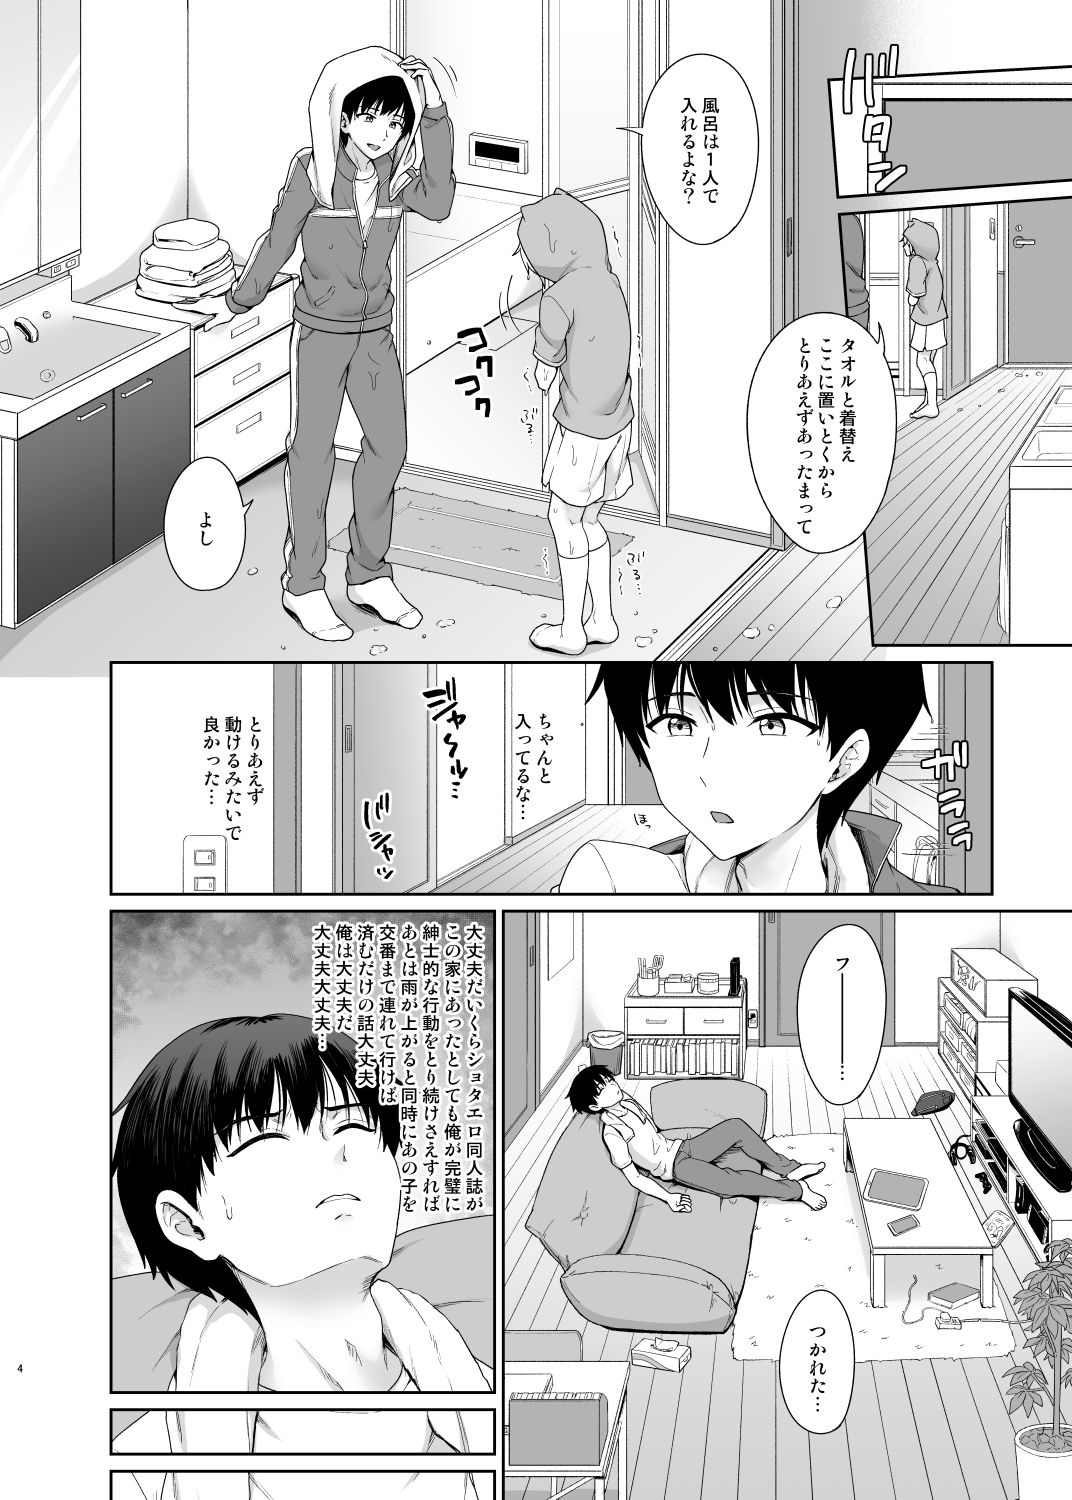 [Toitoikai (Toitoi)] Succubus-kun to no Seikatsu 1 - Life with the Succubus boy. [Digital] page 5 full